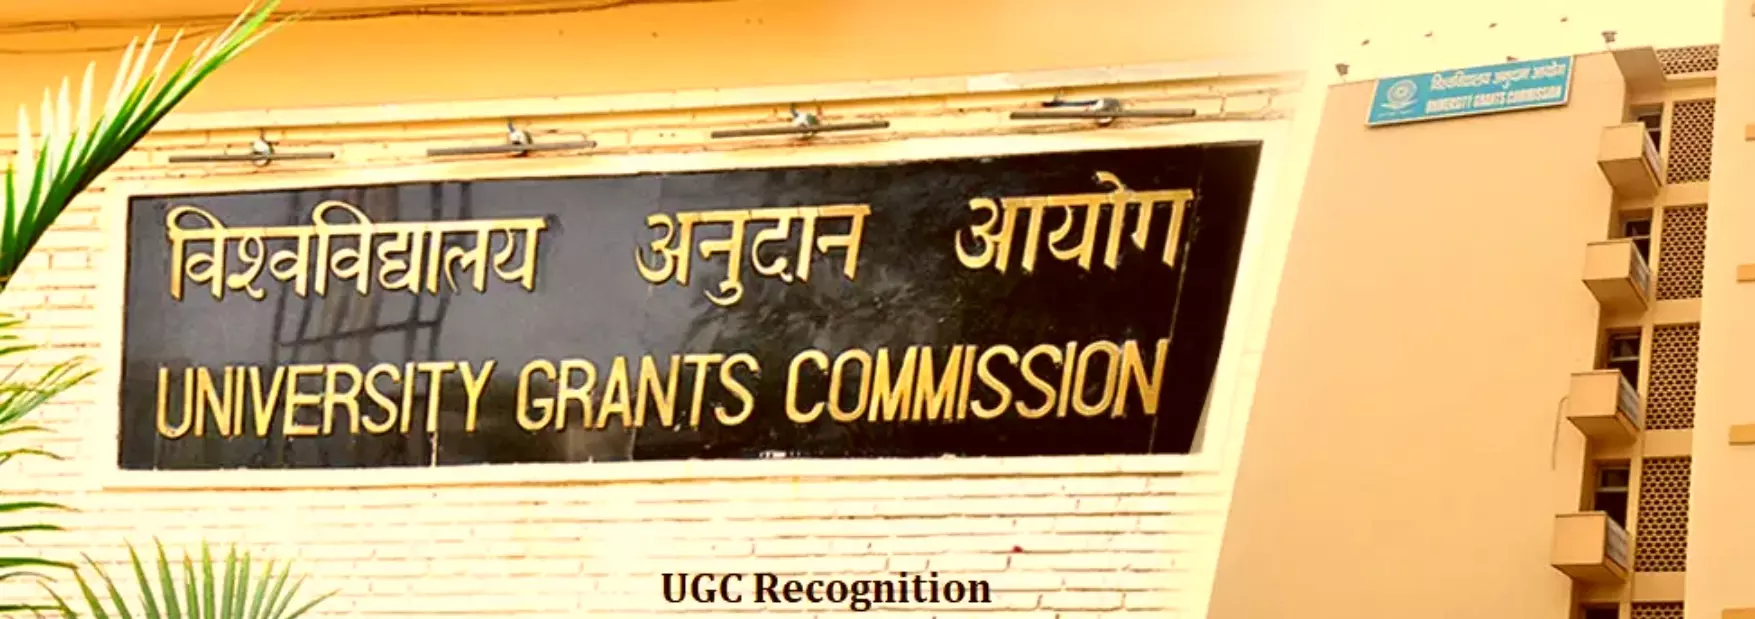 यूजी/पीजी में अब रिक्त नहीं रहेंगी सीट्स, UGC ने दी CUET के बाद भी विश्वविद्यालयों को प्रवेश परीक्षा की परमिशन